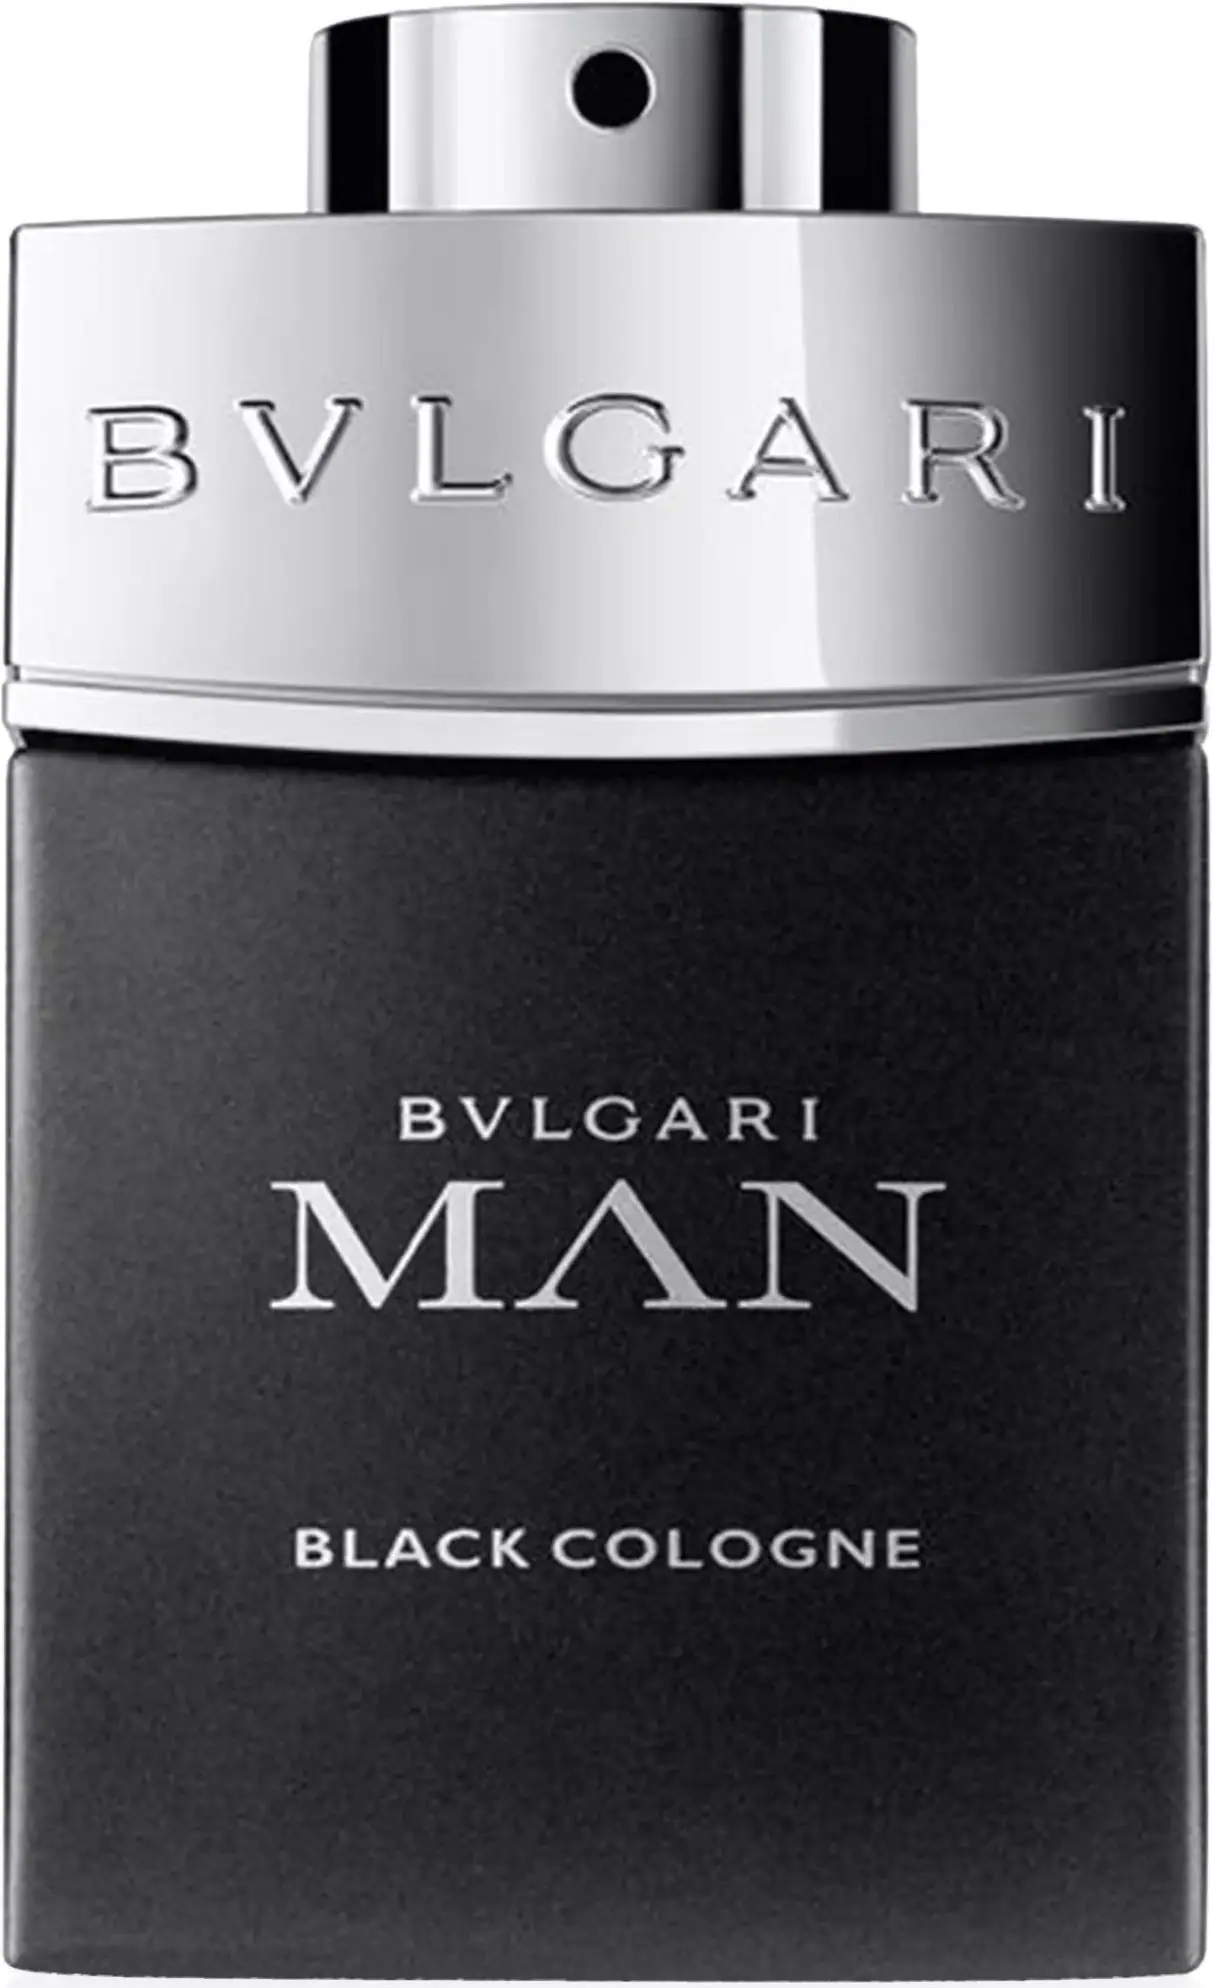 Bulgari Man Black